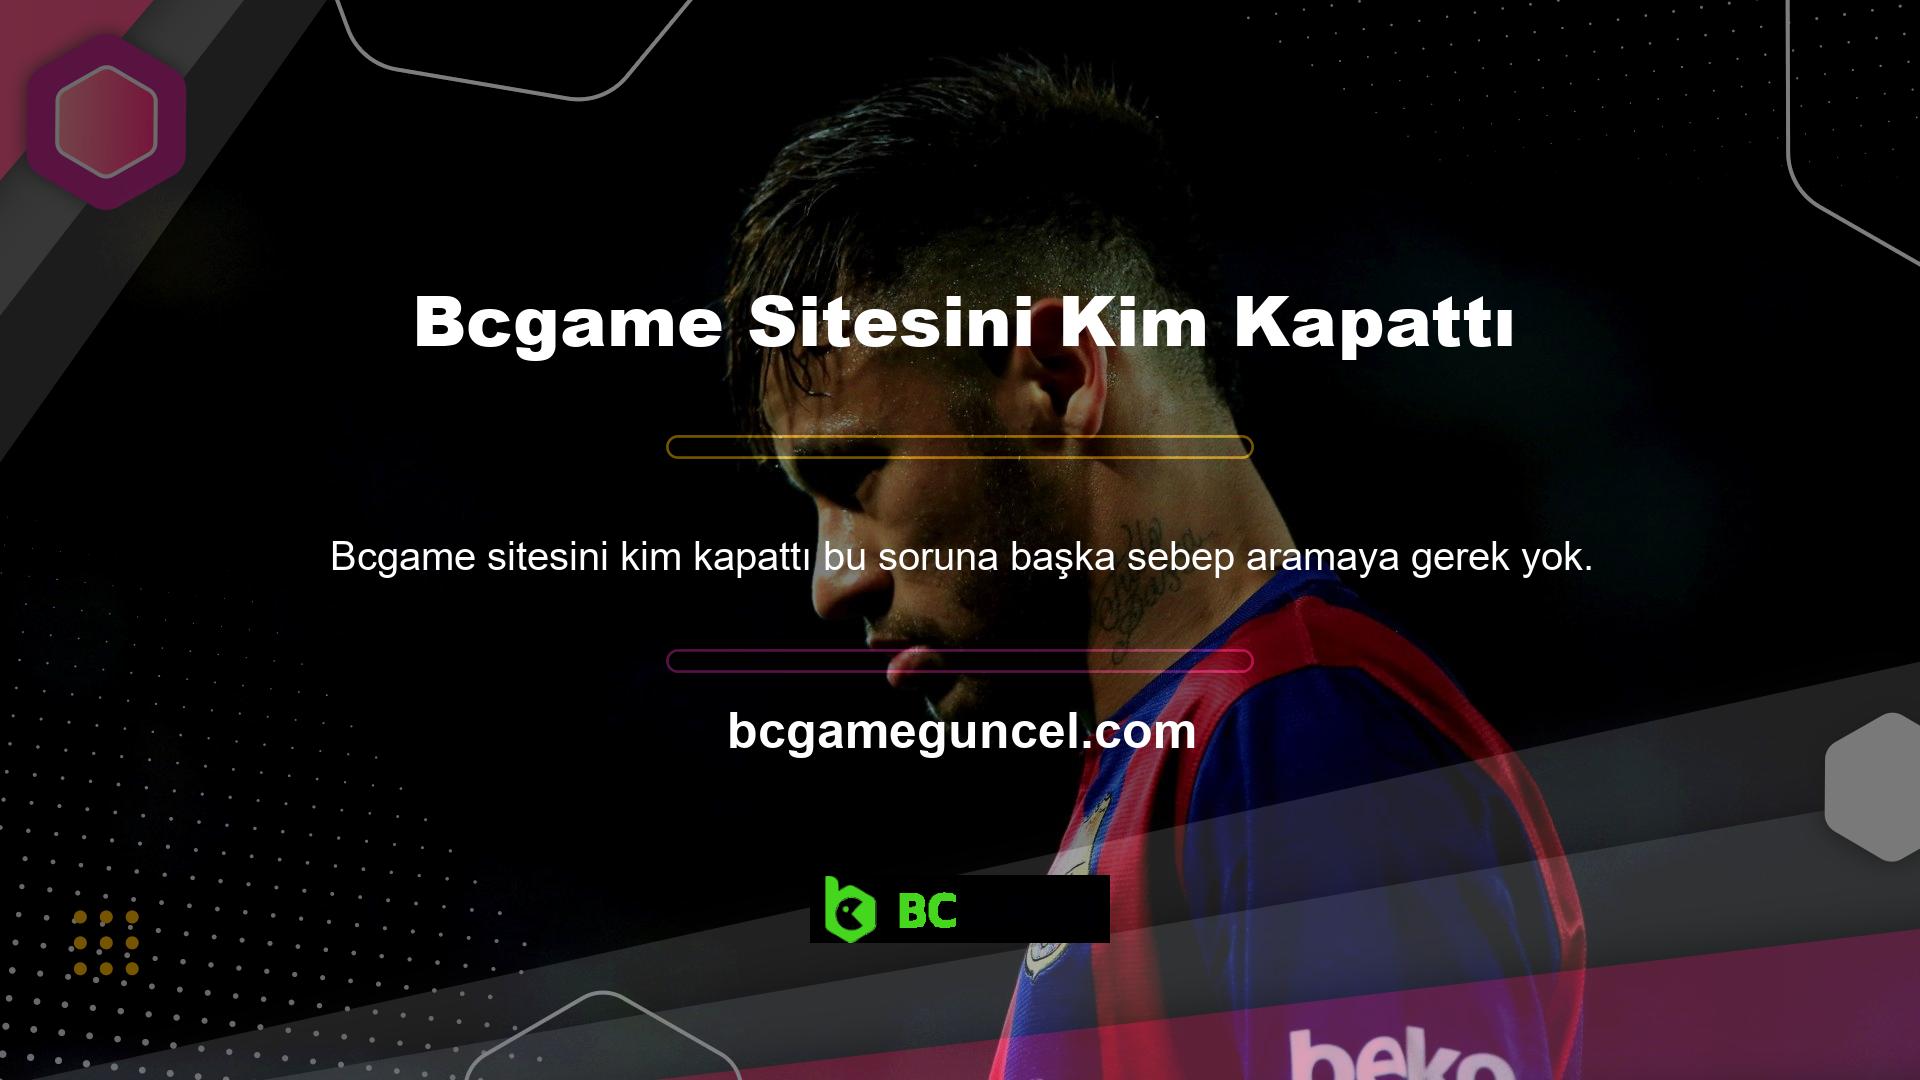 Bcgame web sitesi Lisans Belgesine uygun olarak düzgün bir şekilde çalışmaktadır